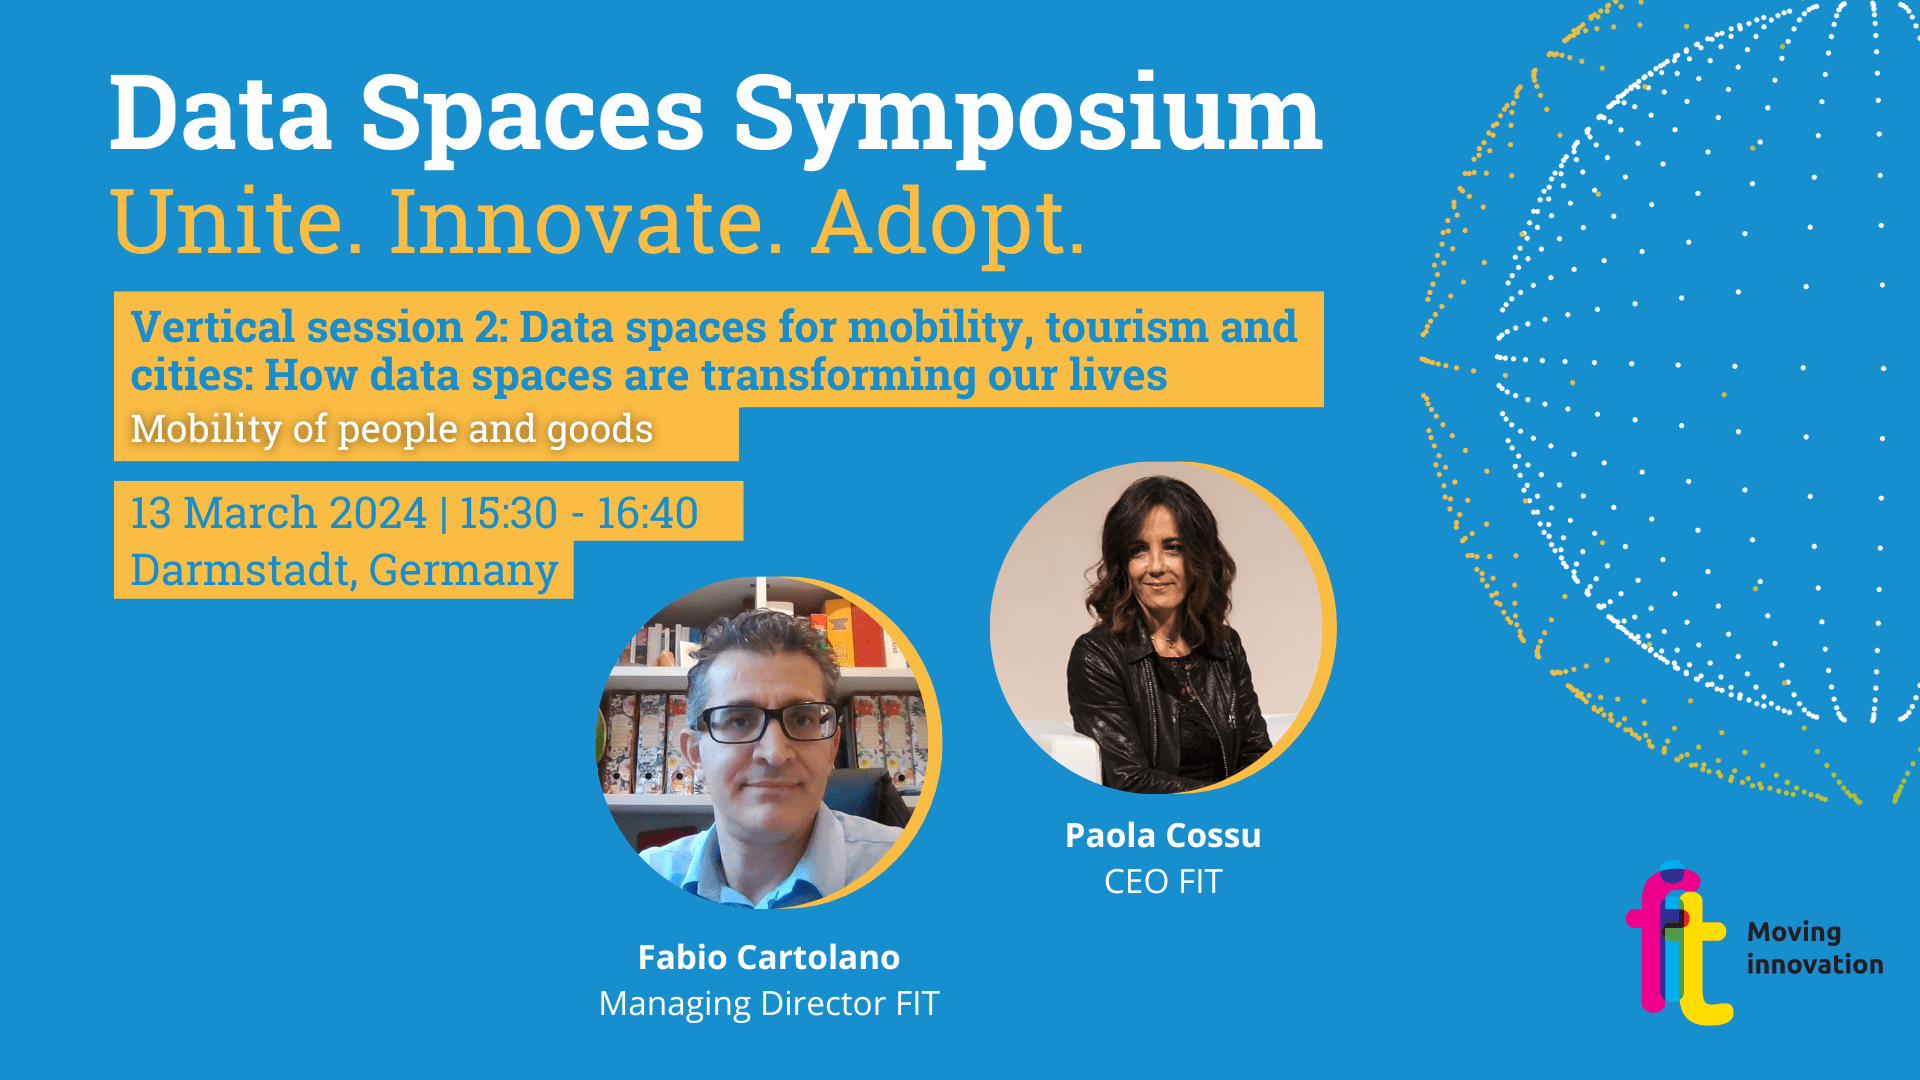 Data Spaces per la mobilità di persone e merci: Paola Cossu e Fabio Cartolano, CEO e Managing Director FIT, relatori al Data Spaces Symposium 2024